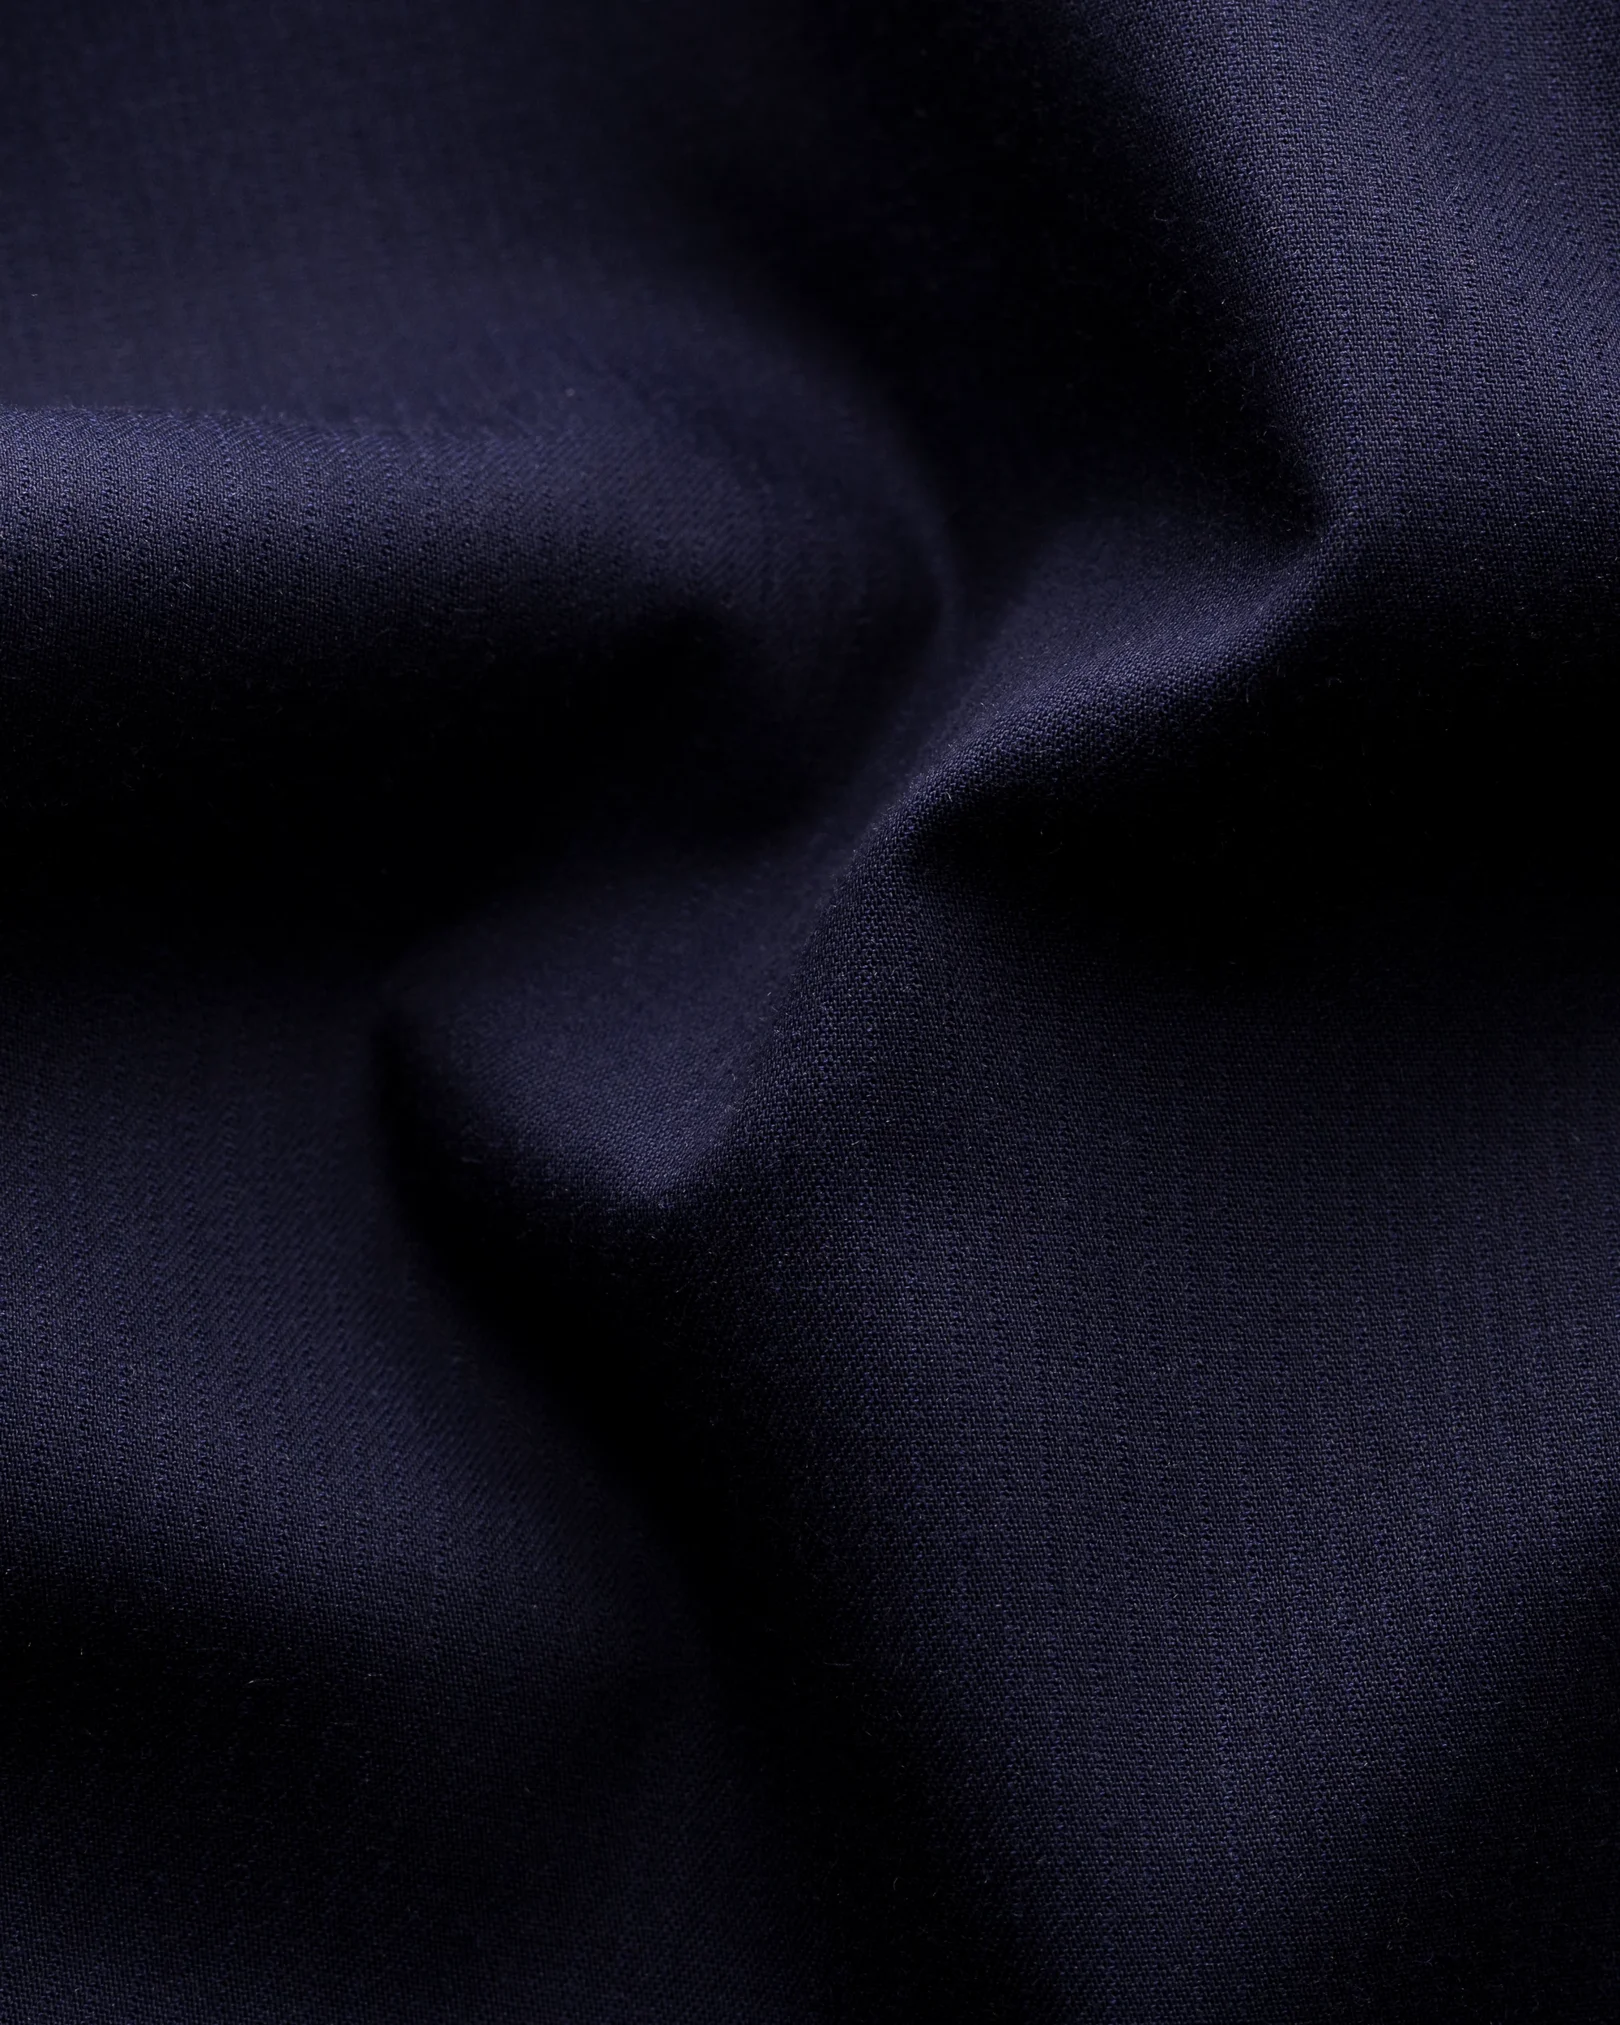 Eton - dark blue twill shirt